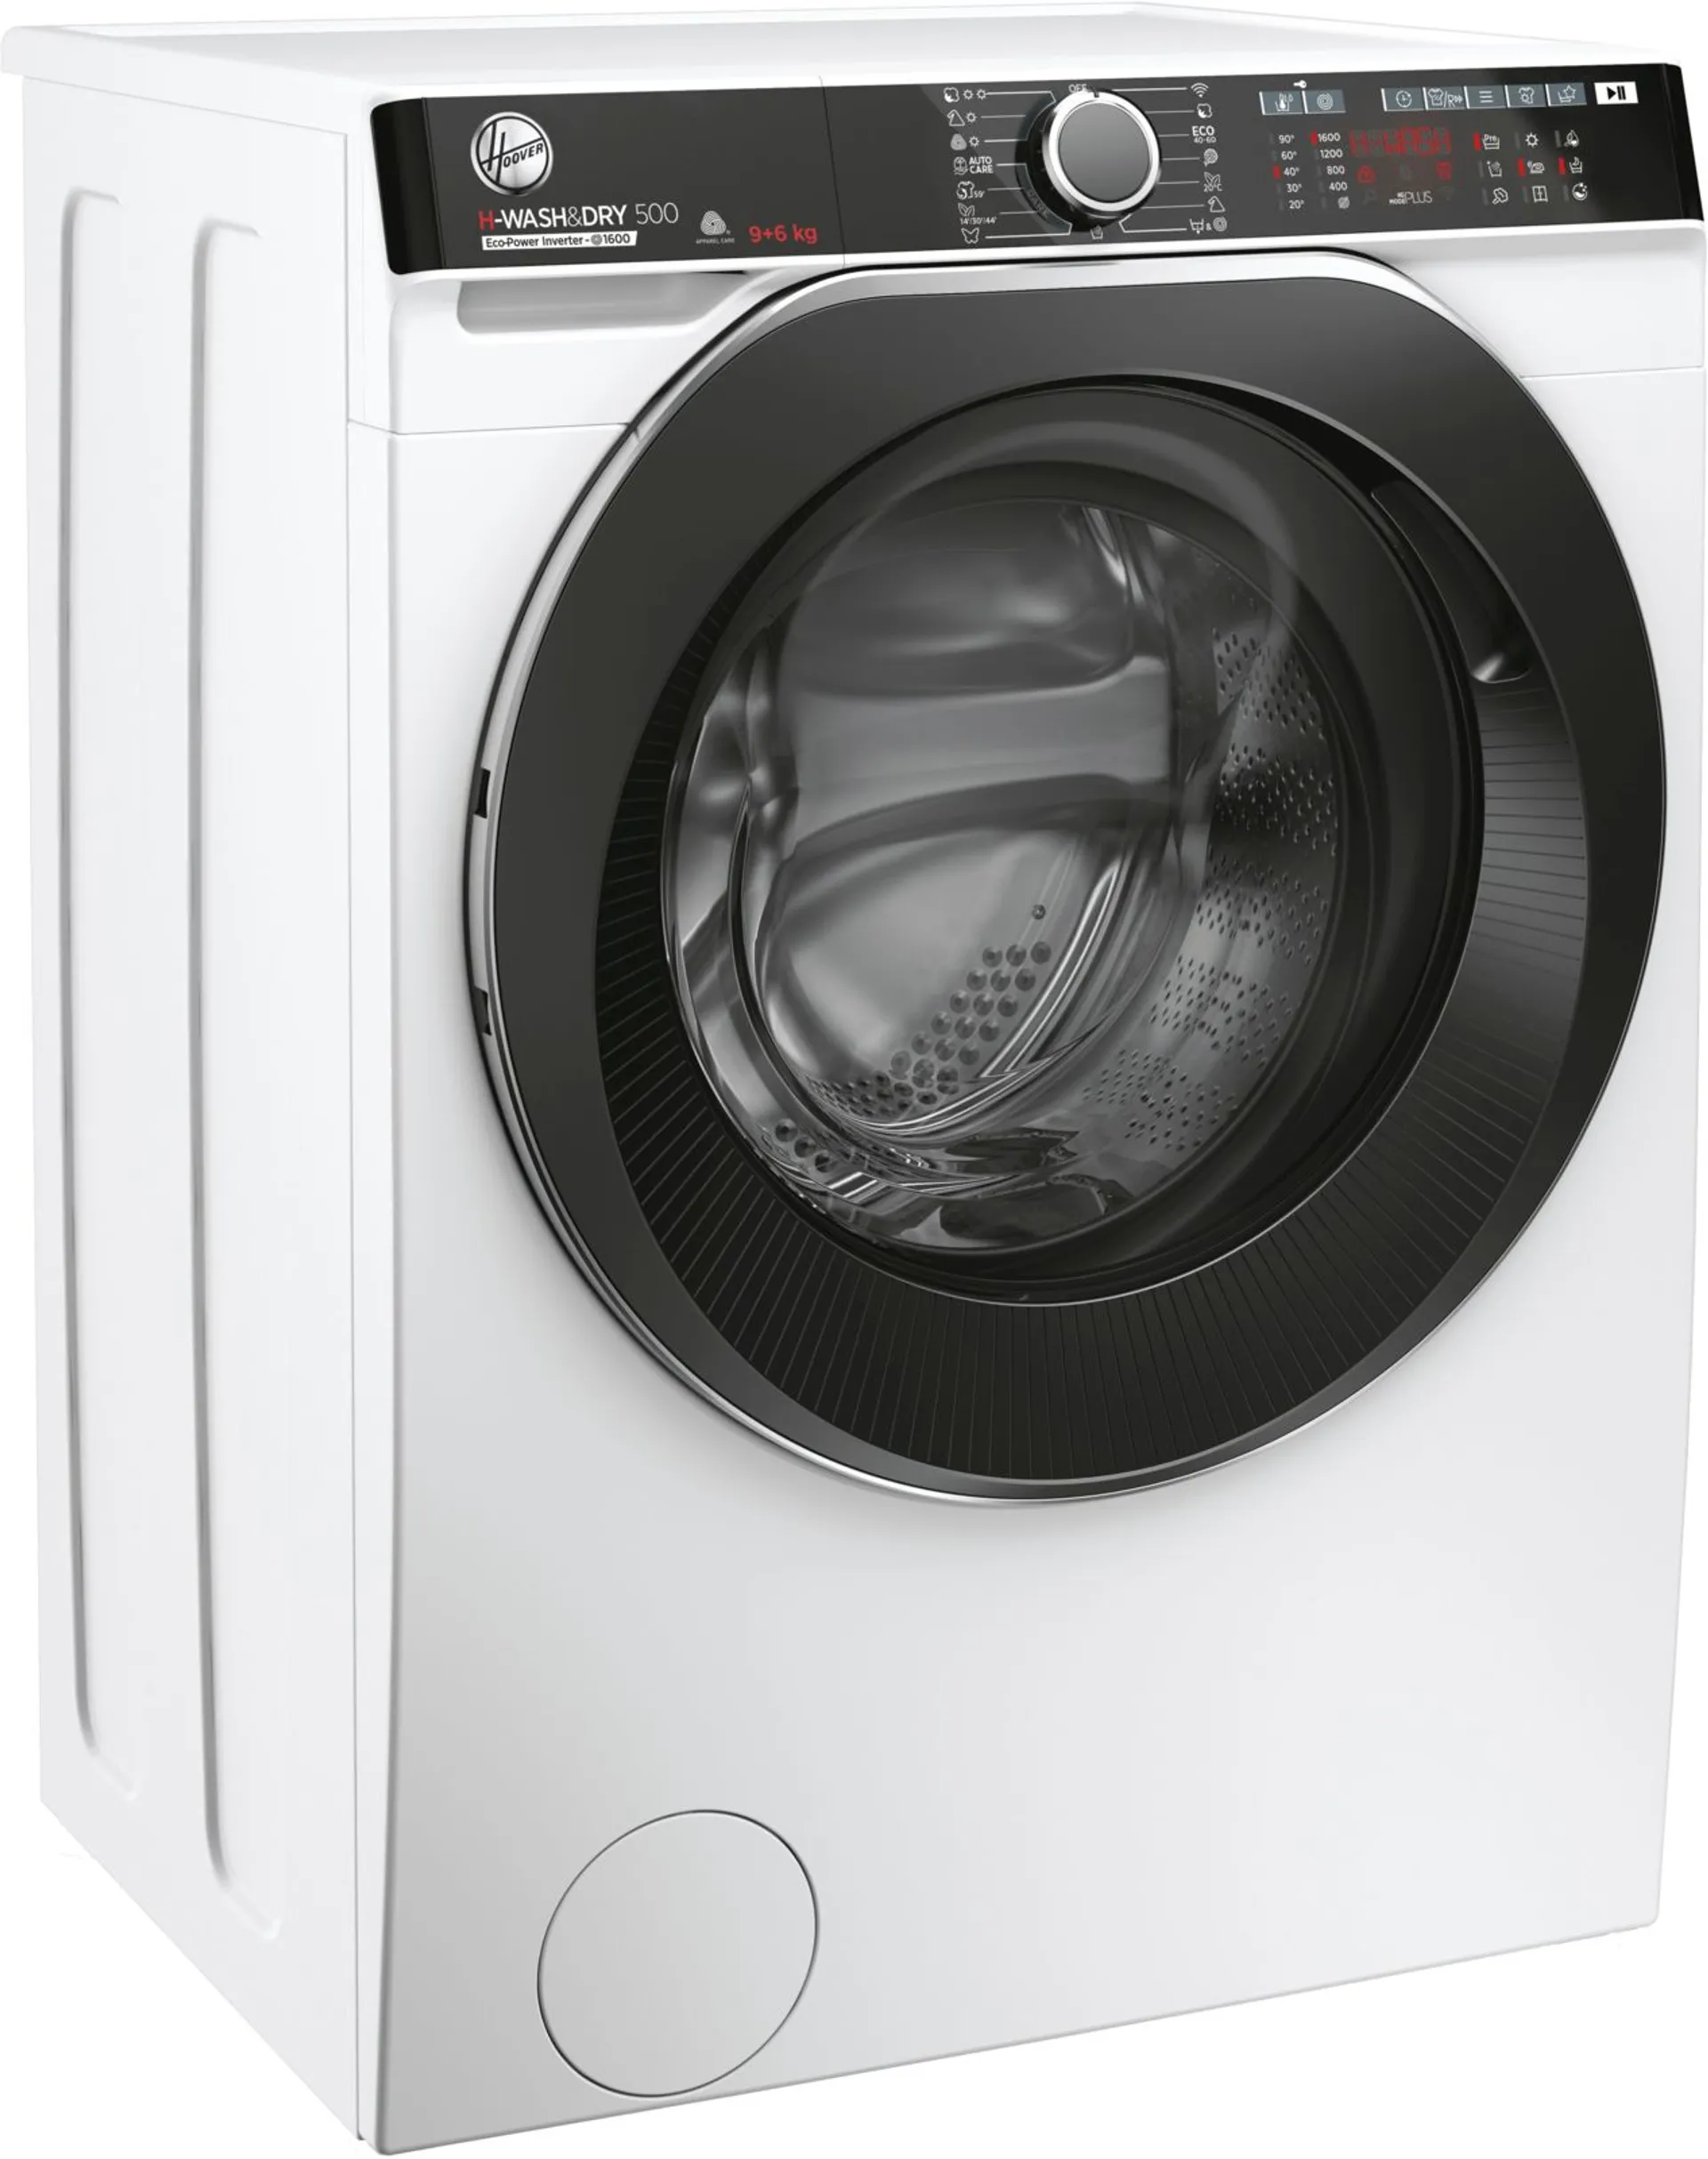 Hoover kuivaava pyykinpesukone 9/6kg H-Wash&Dry 500 Pro valkoinen - 2